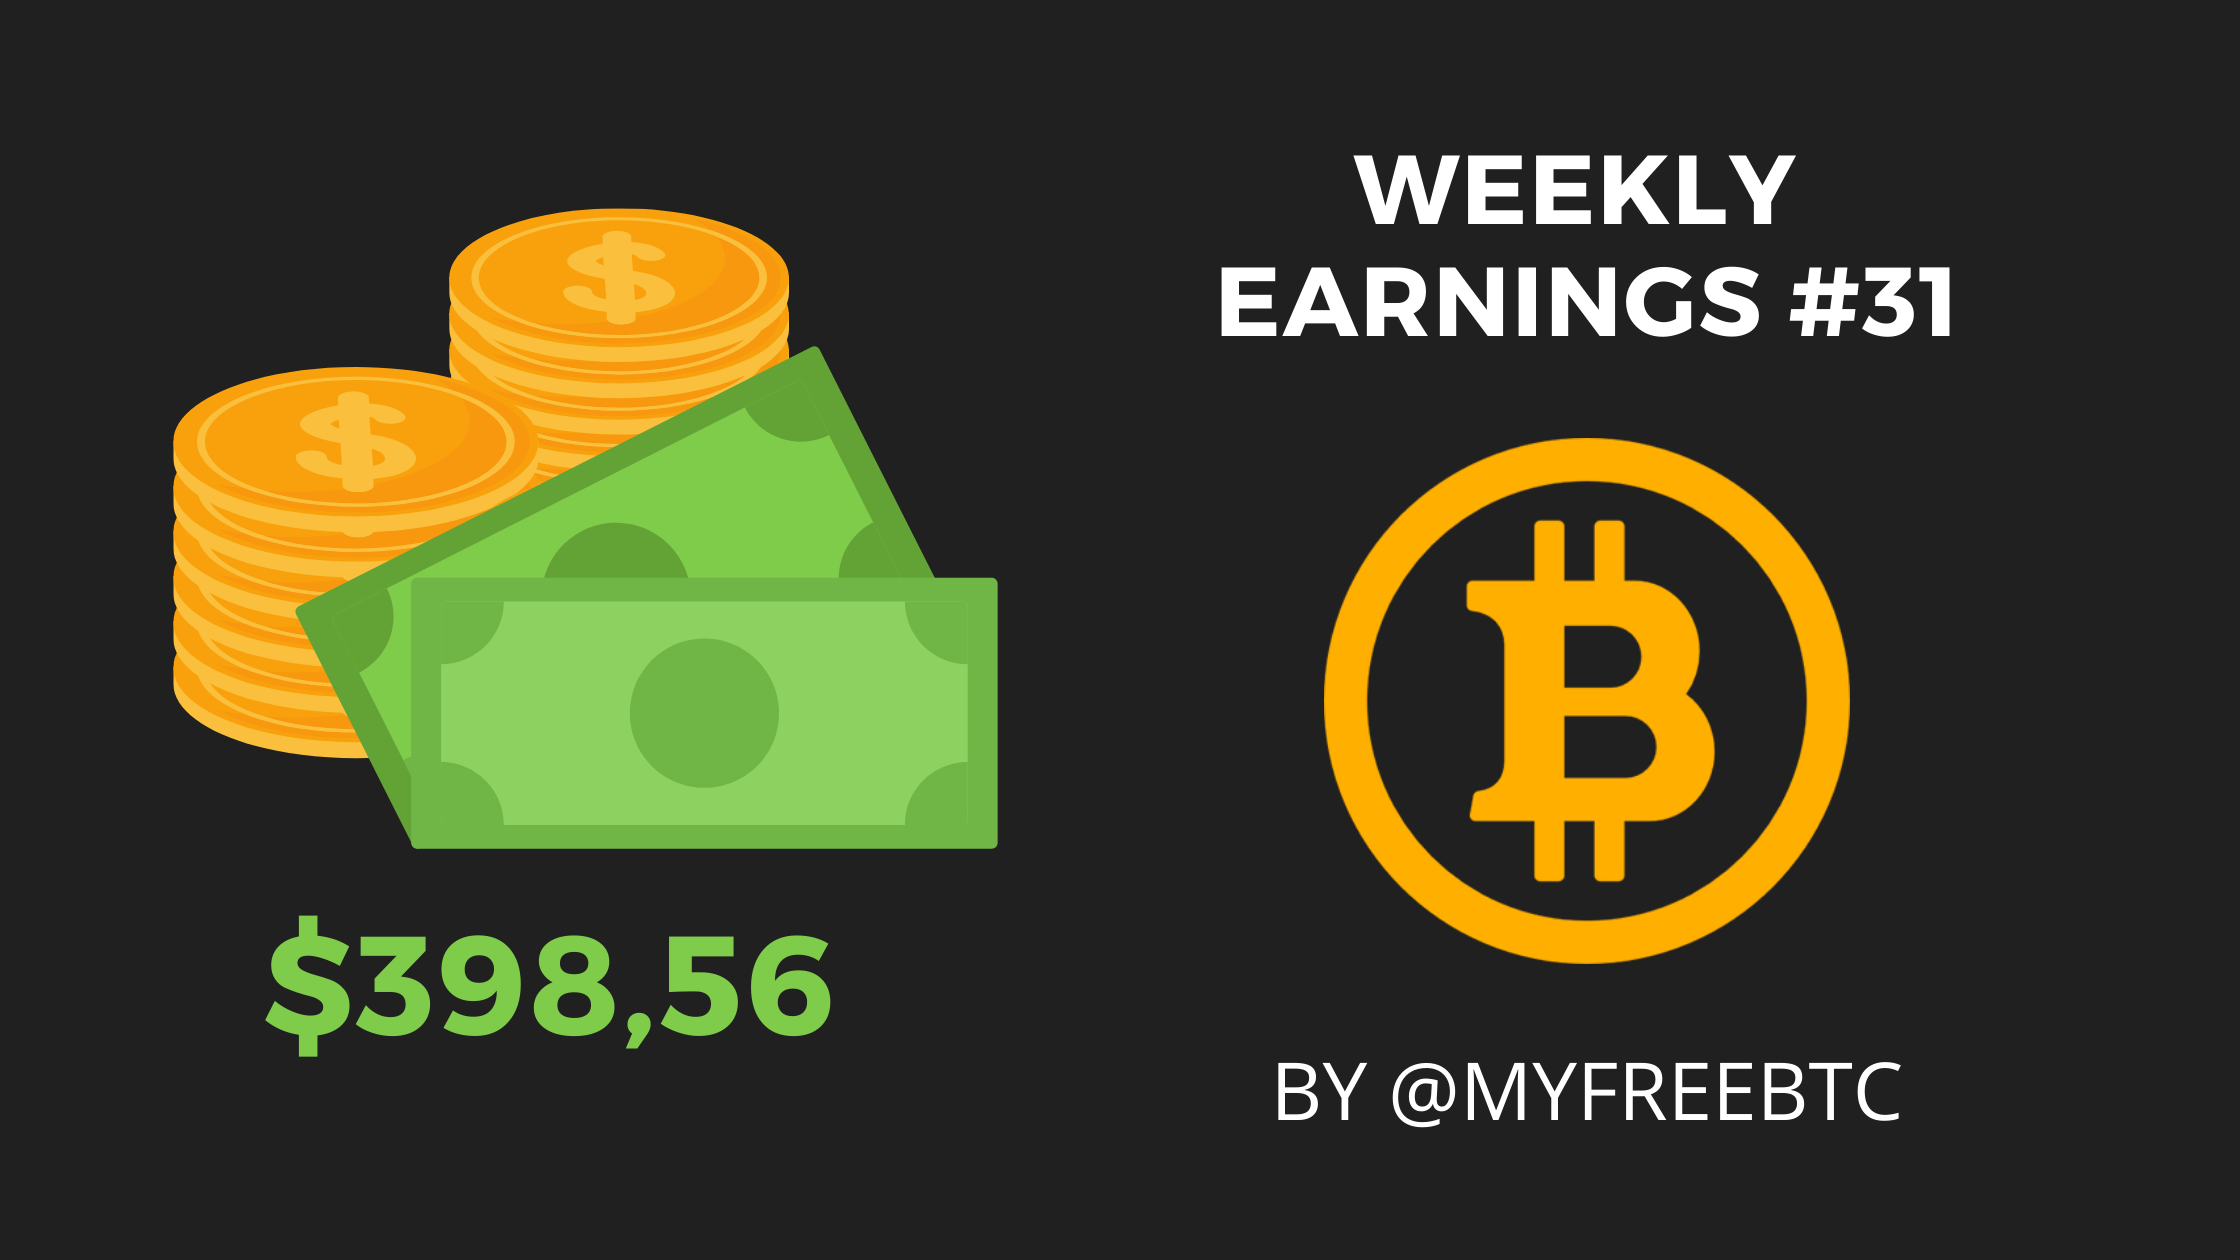 Weekly earnings 31.png